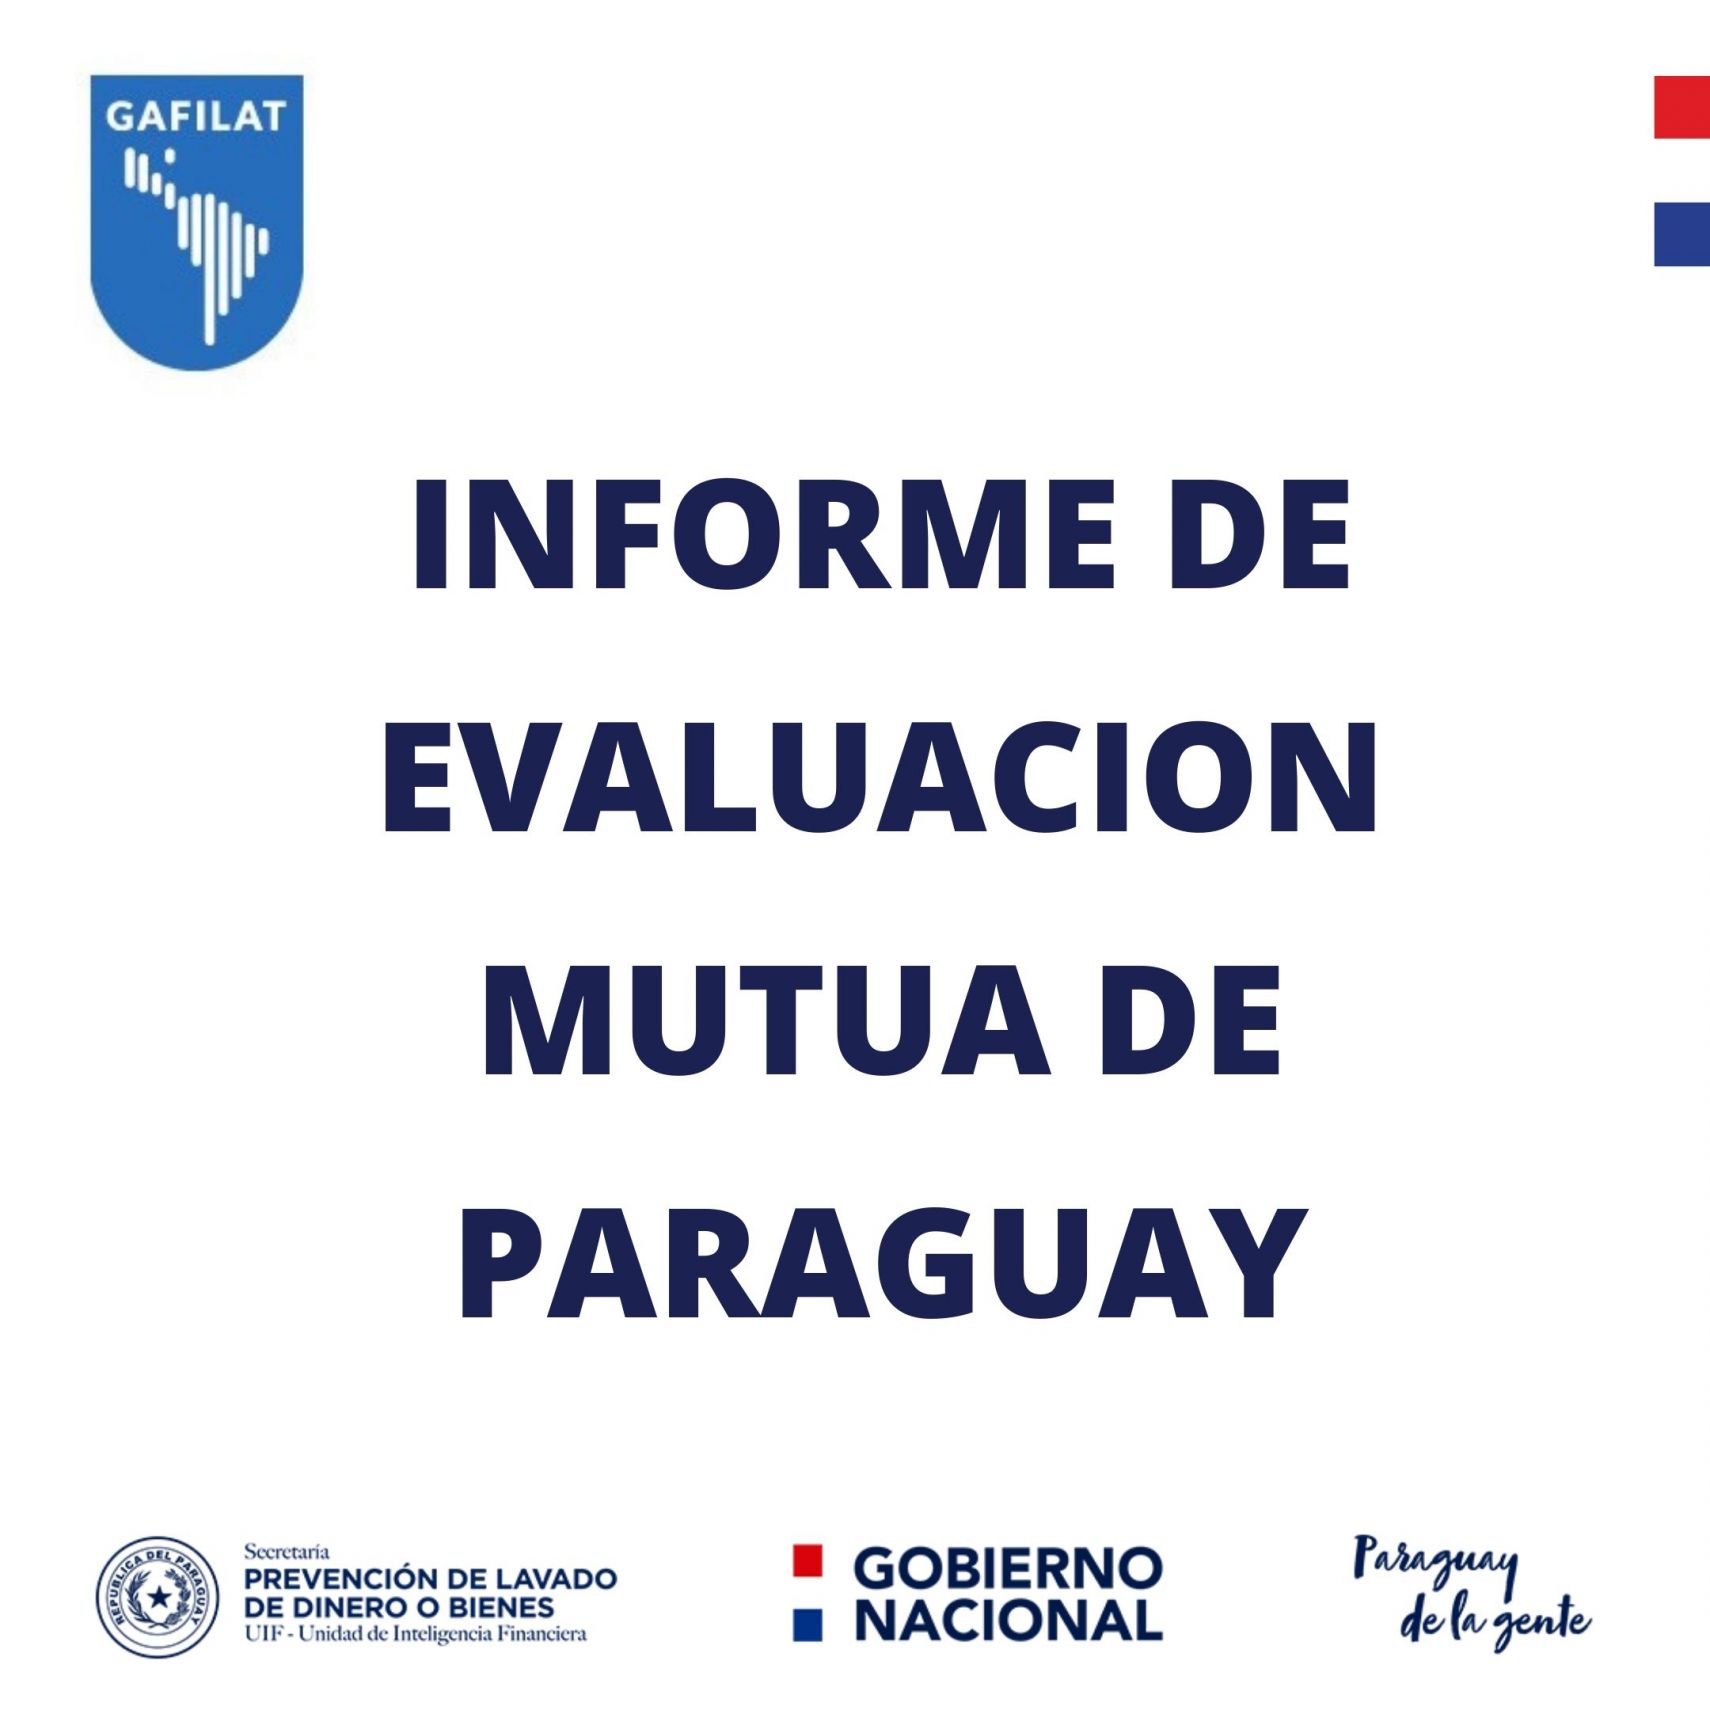 PARAGUAY remite actualización para evaluación del GAFILAT